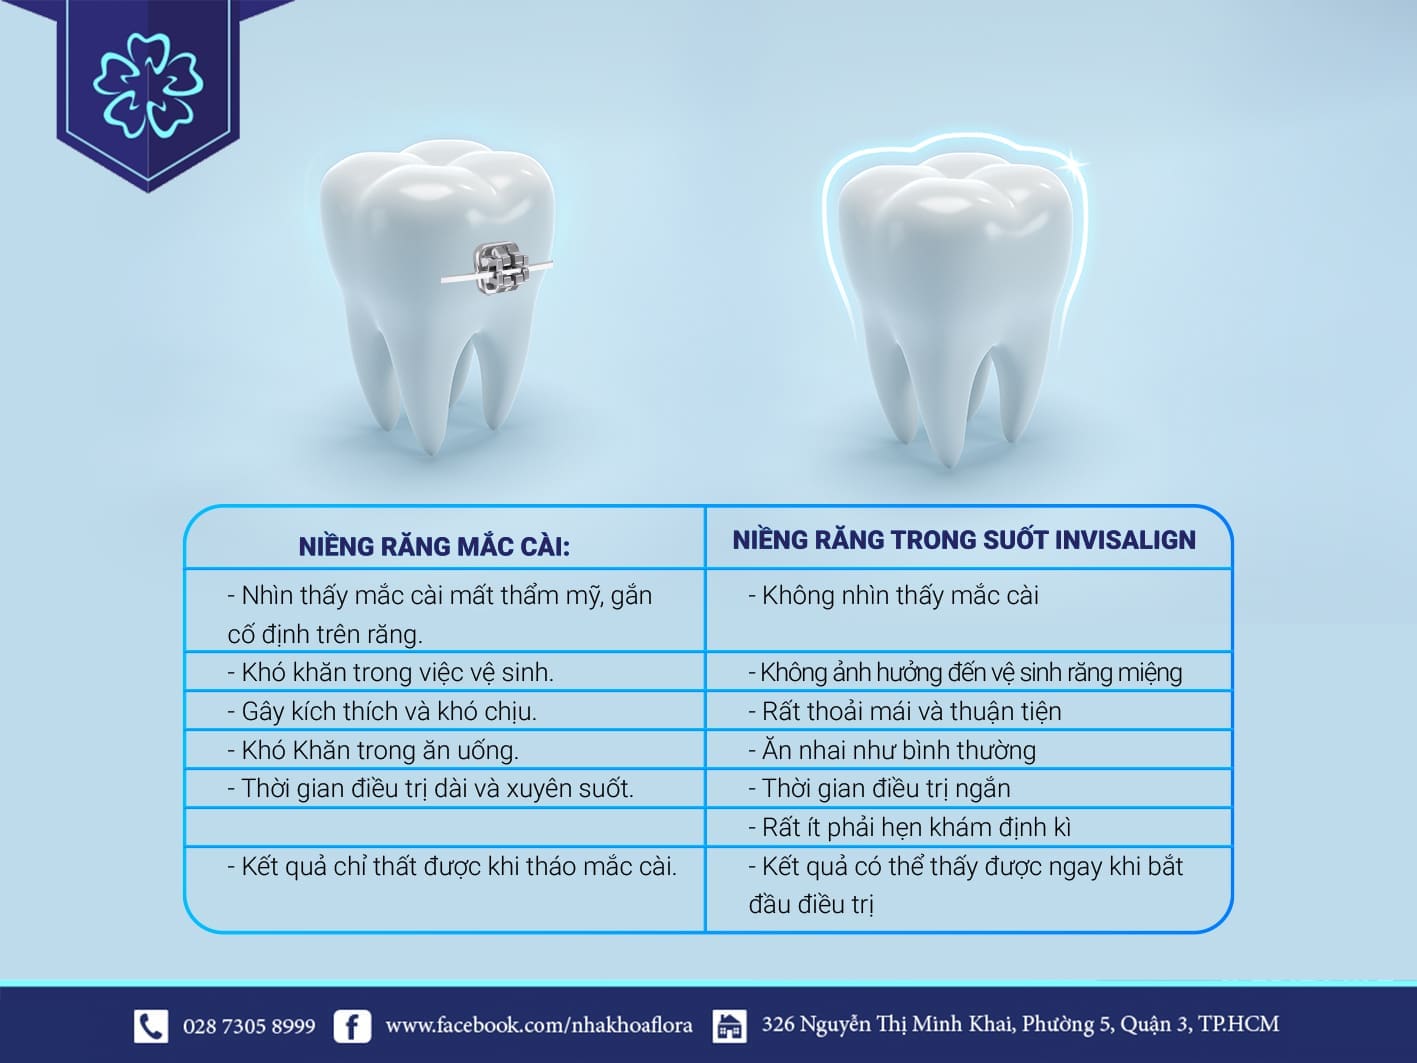 Comparison of braces